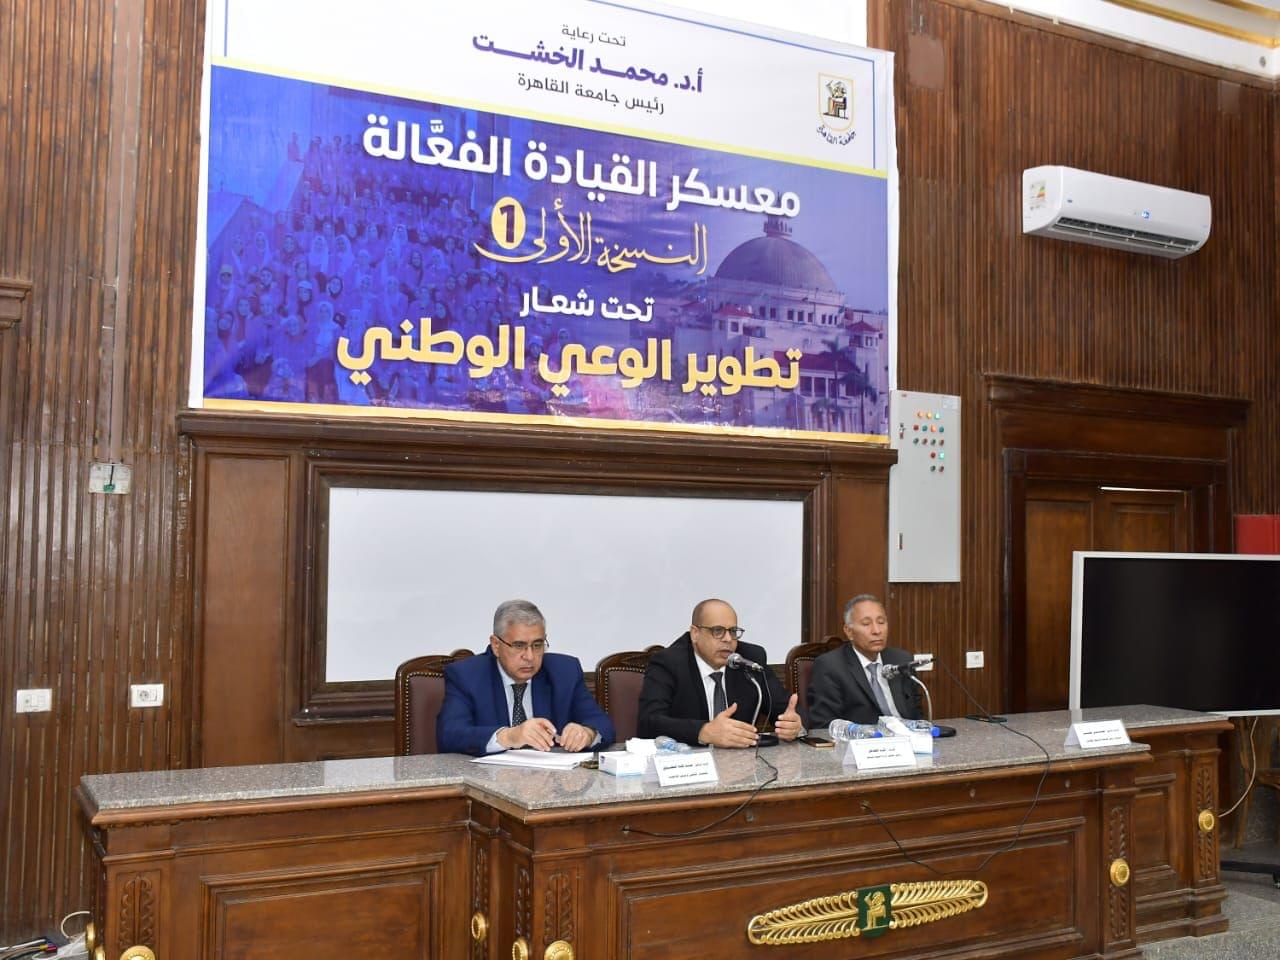 فى فعاليات الأسبوع الثالث بجامعة القاهرة لمعسكر القيادة الفعالة وتطوير الوعي .. هذا ما قاله رئيس مجلس إدارة "اليوم السابع"